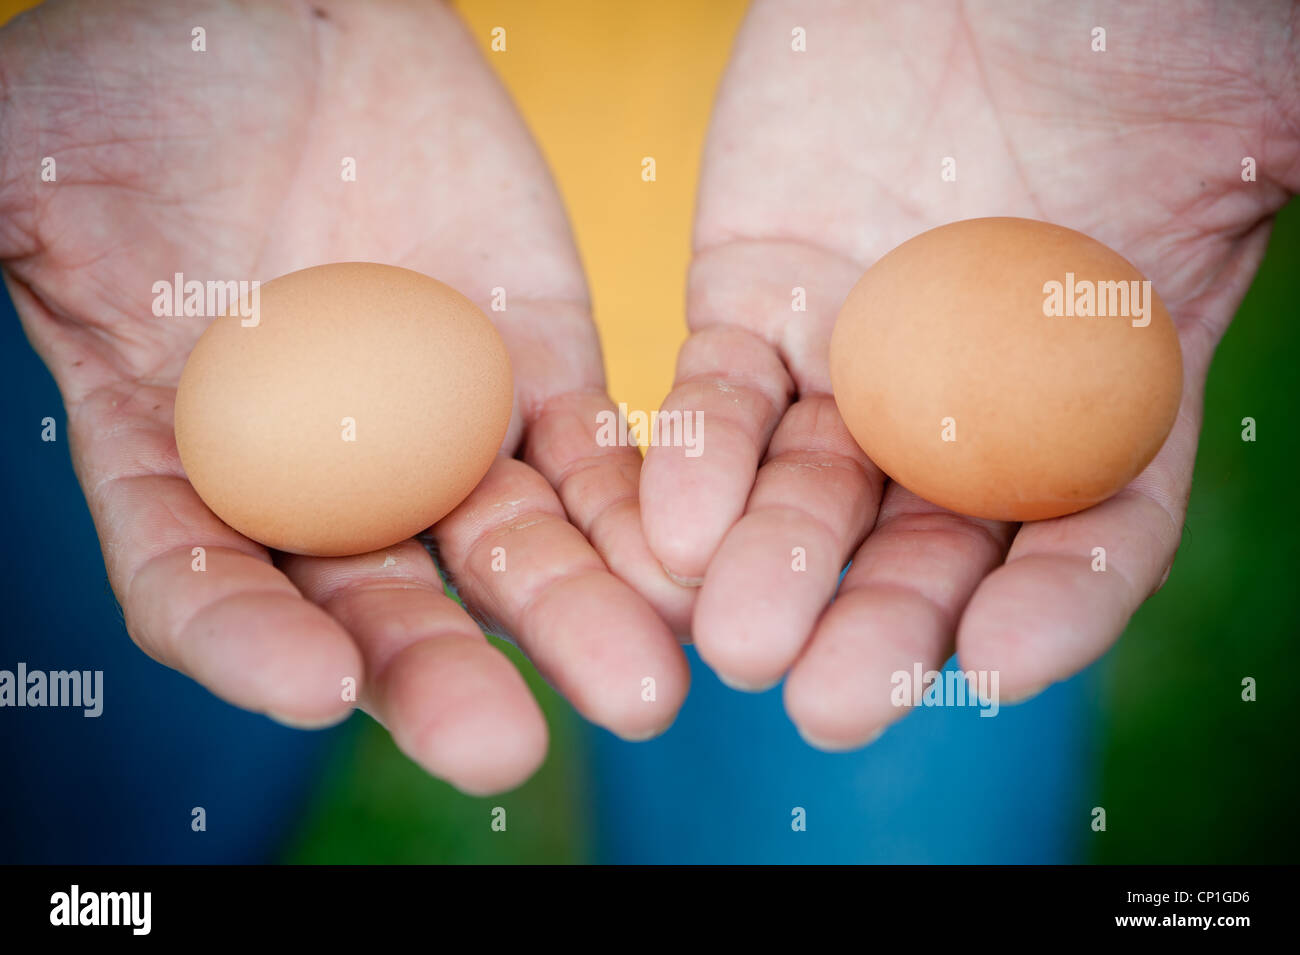 Mani azienda agricola marrone uova fresche Foto Stock